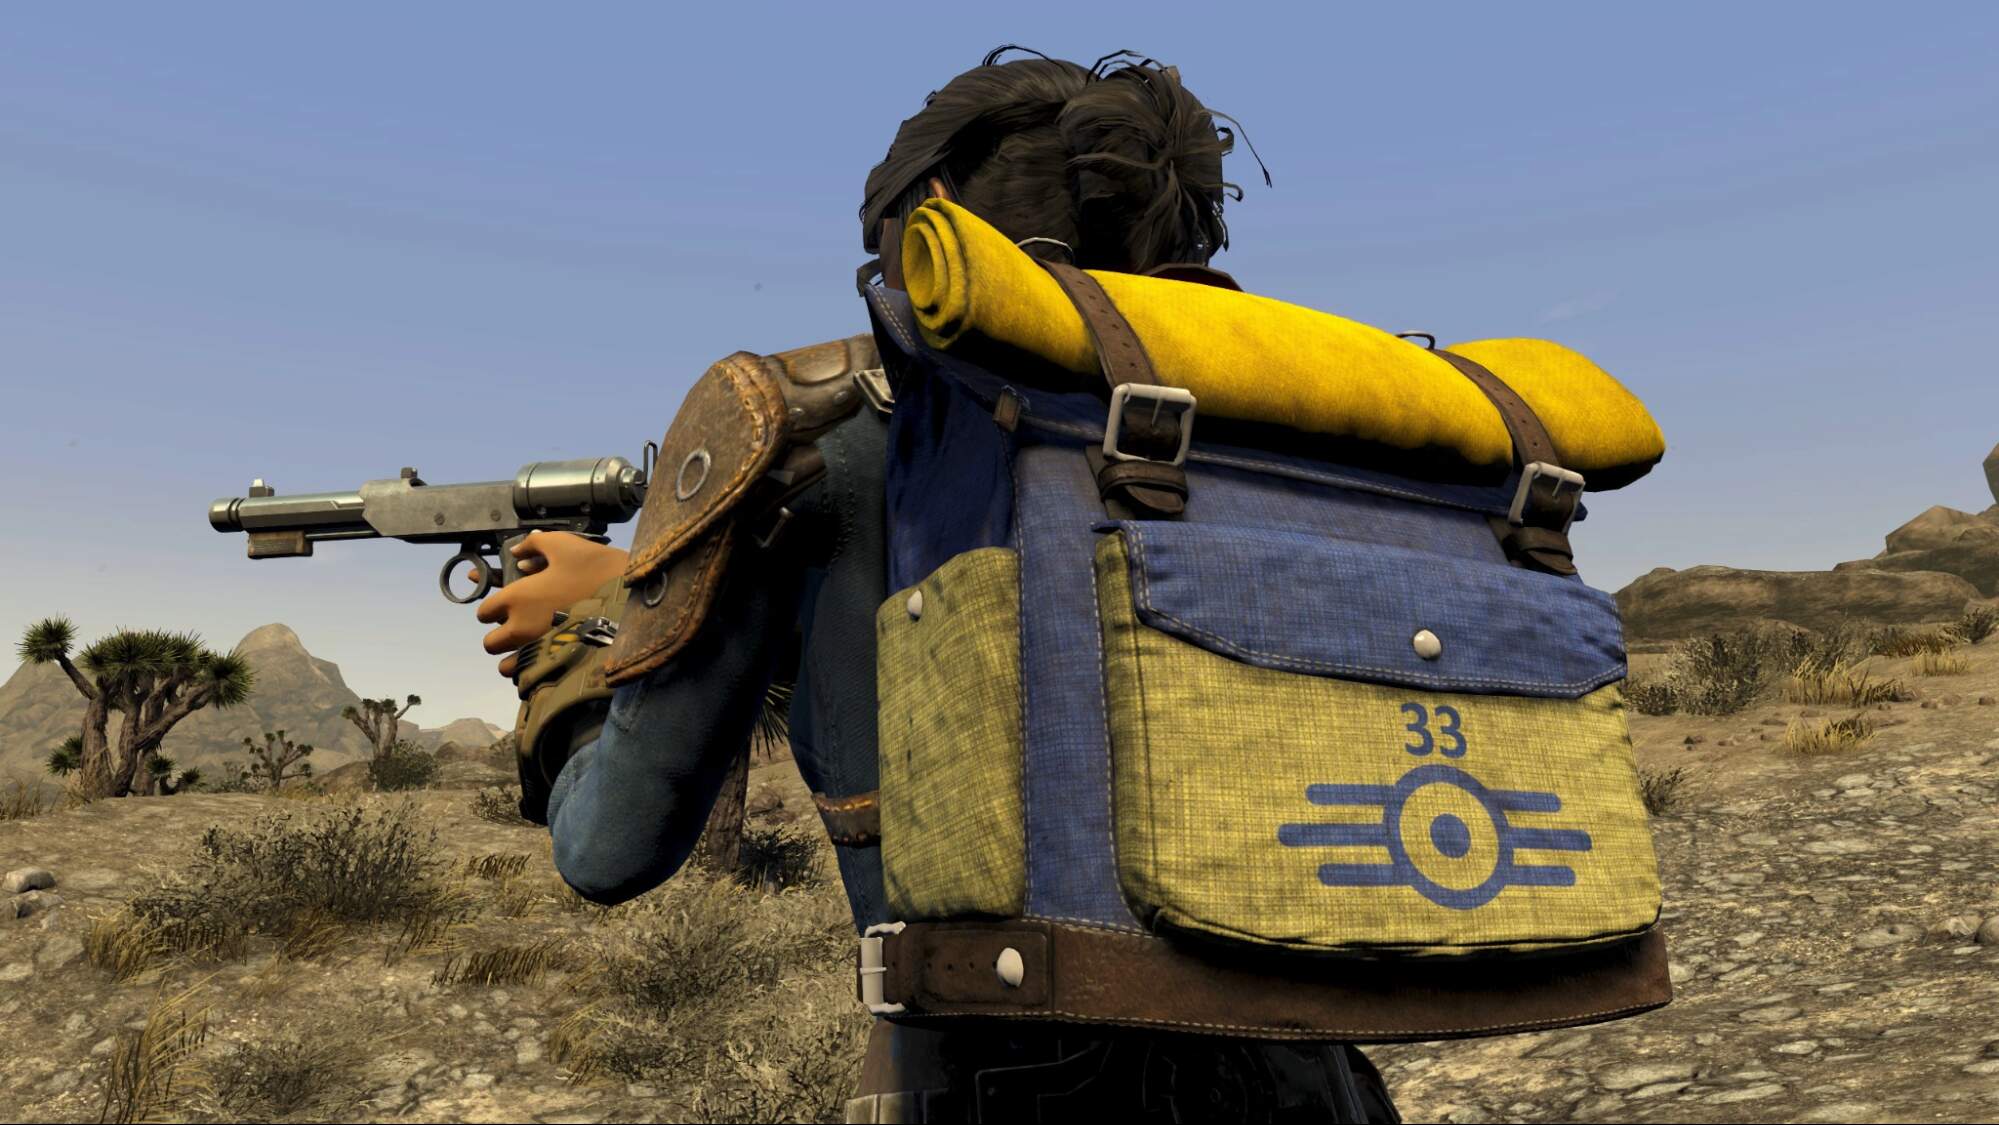 Лучшие моды для Fallout 4 из сериала Фоллаут — Рюкзак Люси с меткой Убежища 33 из сериала Фоллаут